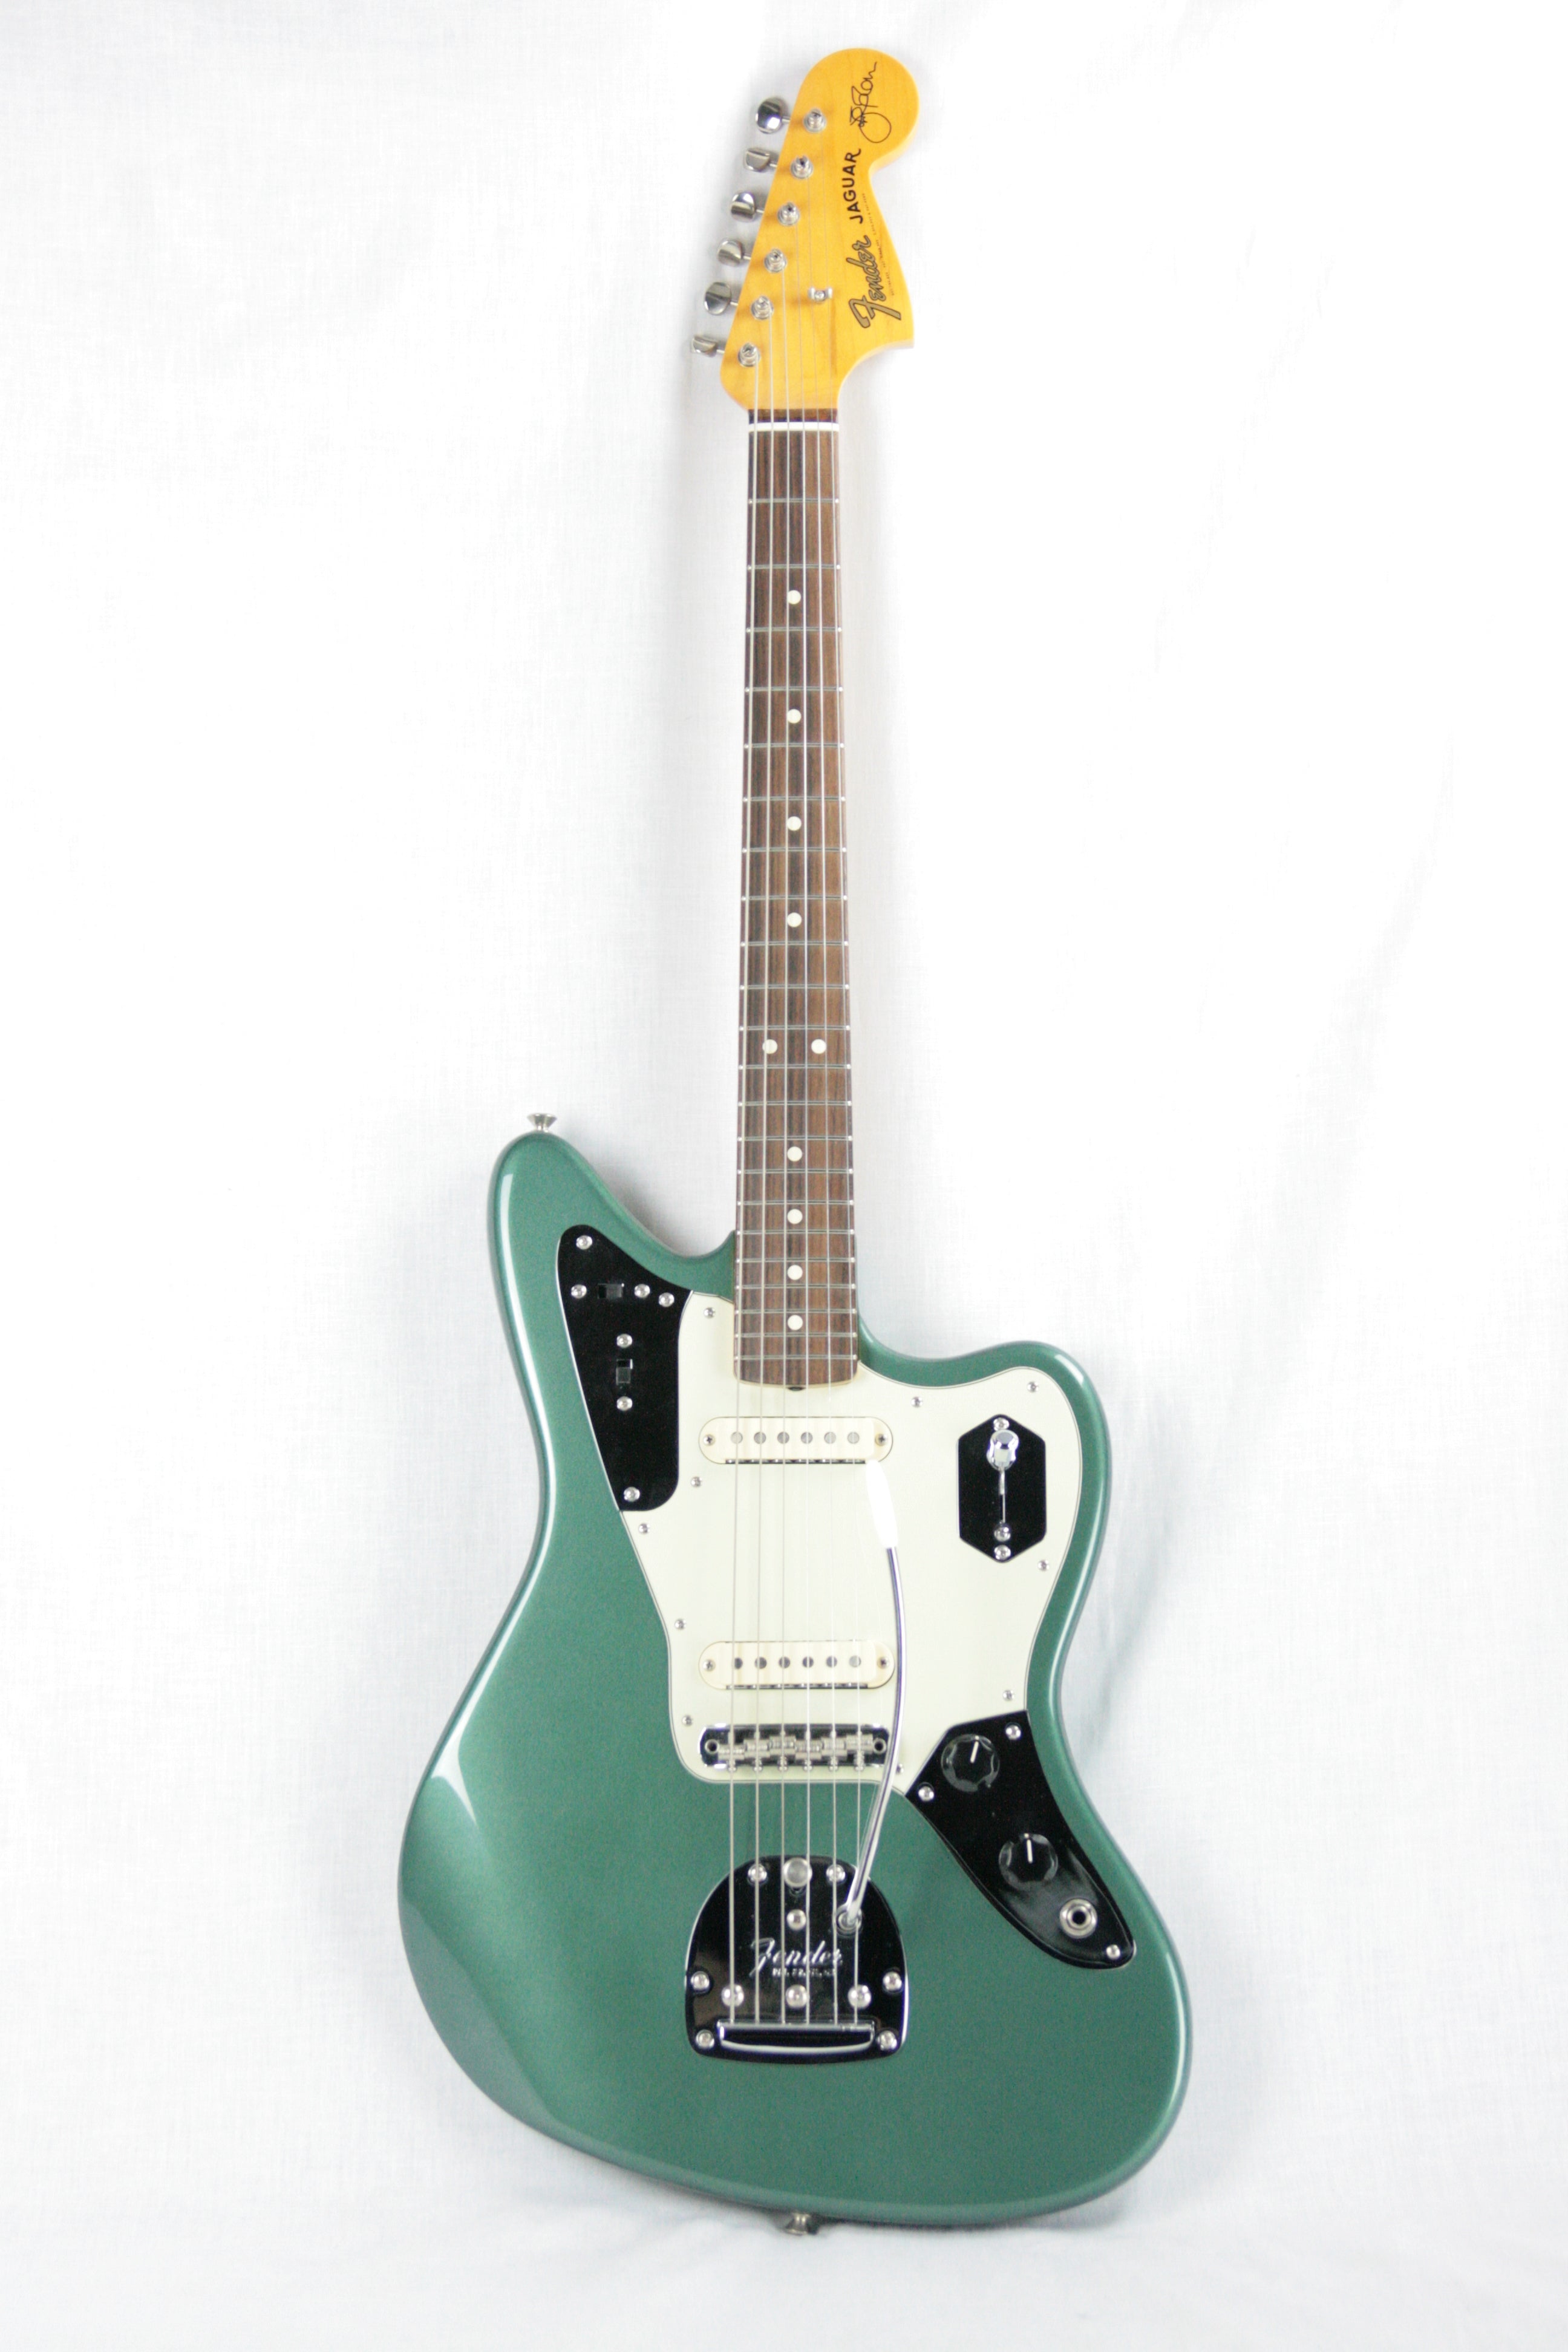 2014 Fender Johnny Marr Jaguar Sherwood Green Rare Limited Edition J